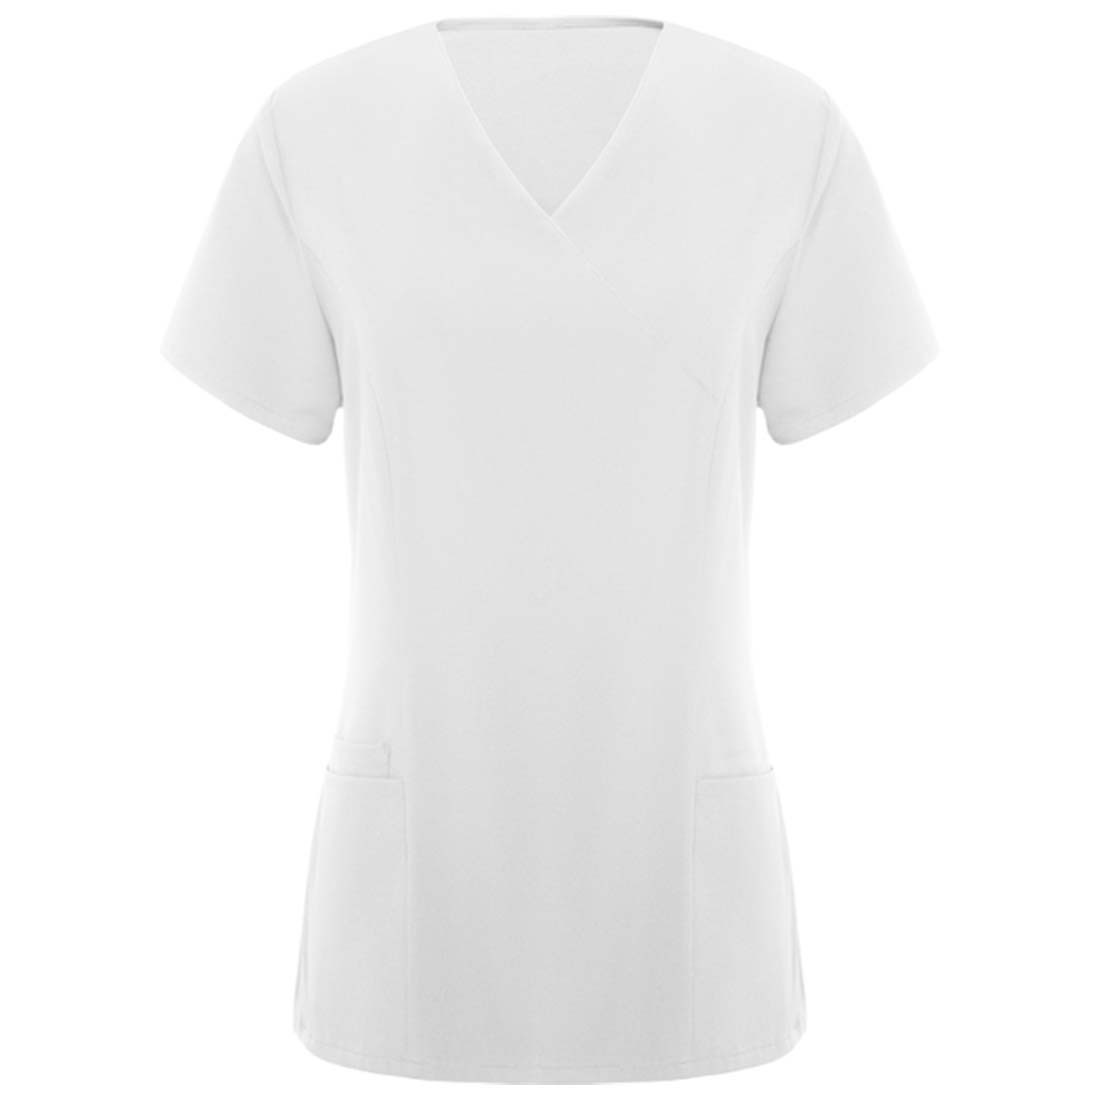 Medizinischer Anzug für Damen - Arbeitskleidung